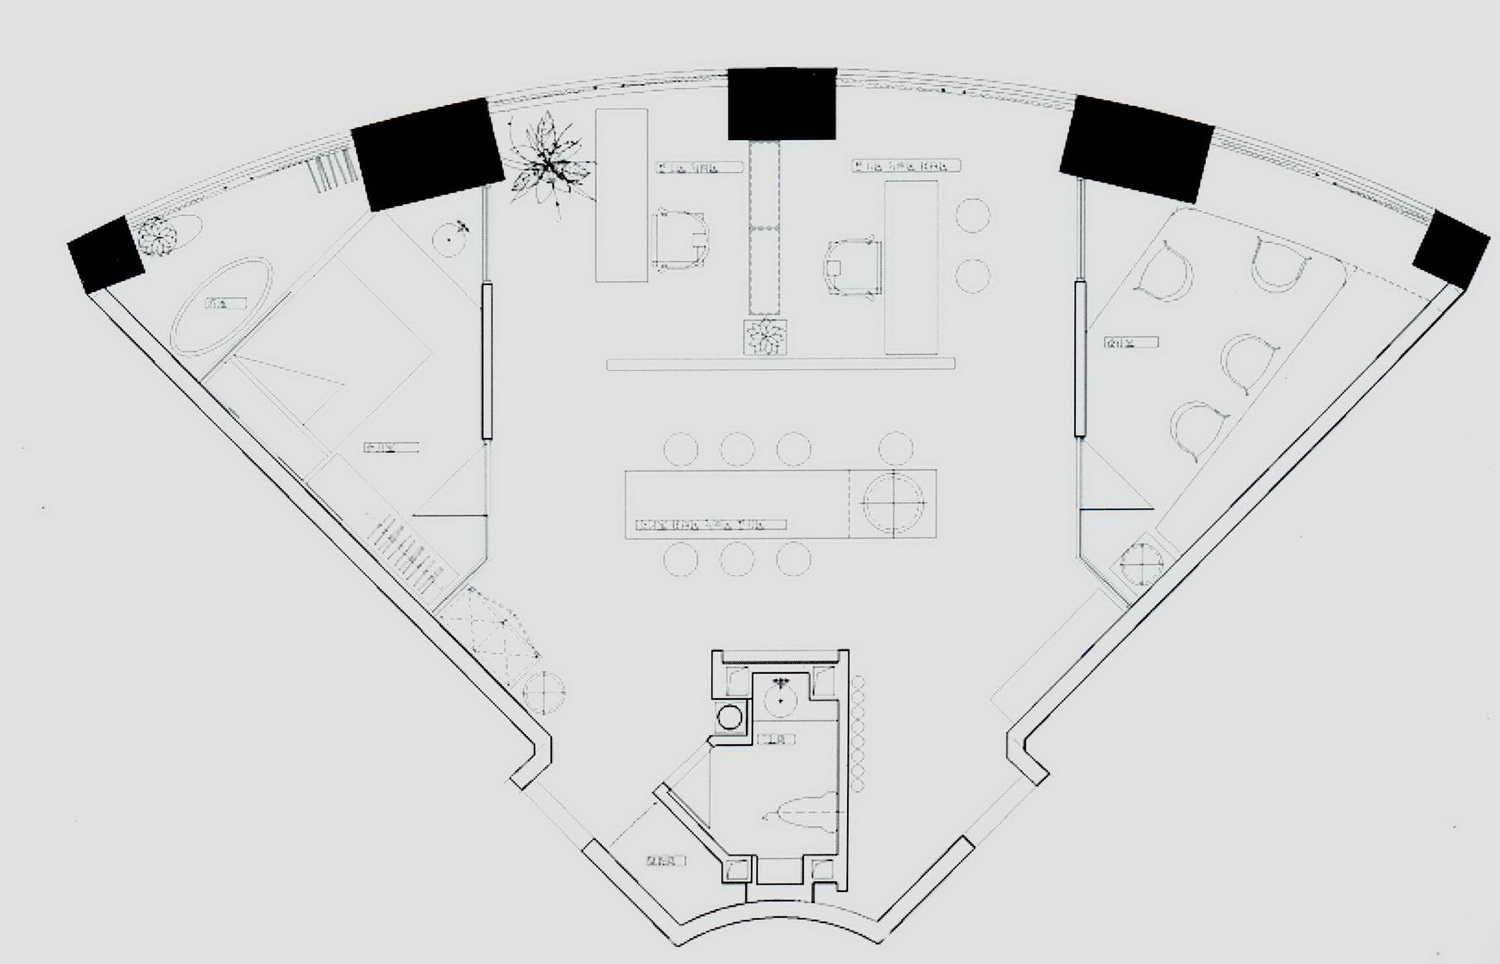 设计师将这个空间分为三个部分,扇形的两边是两个小办公室,正中则是一